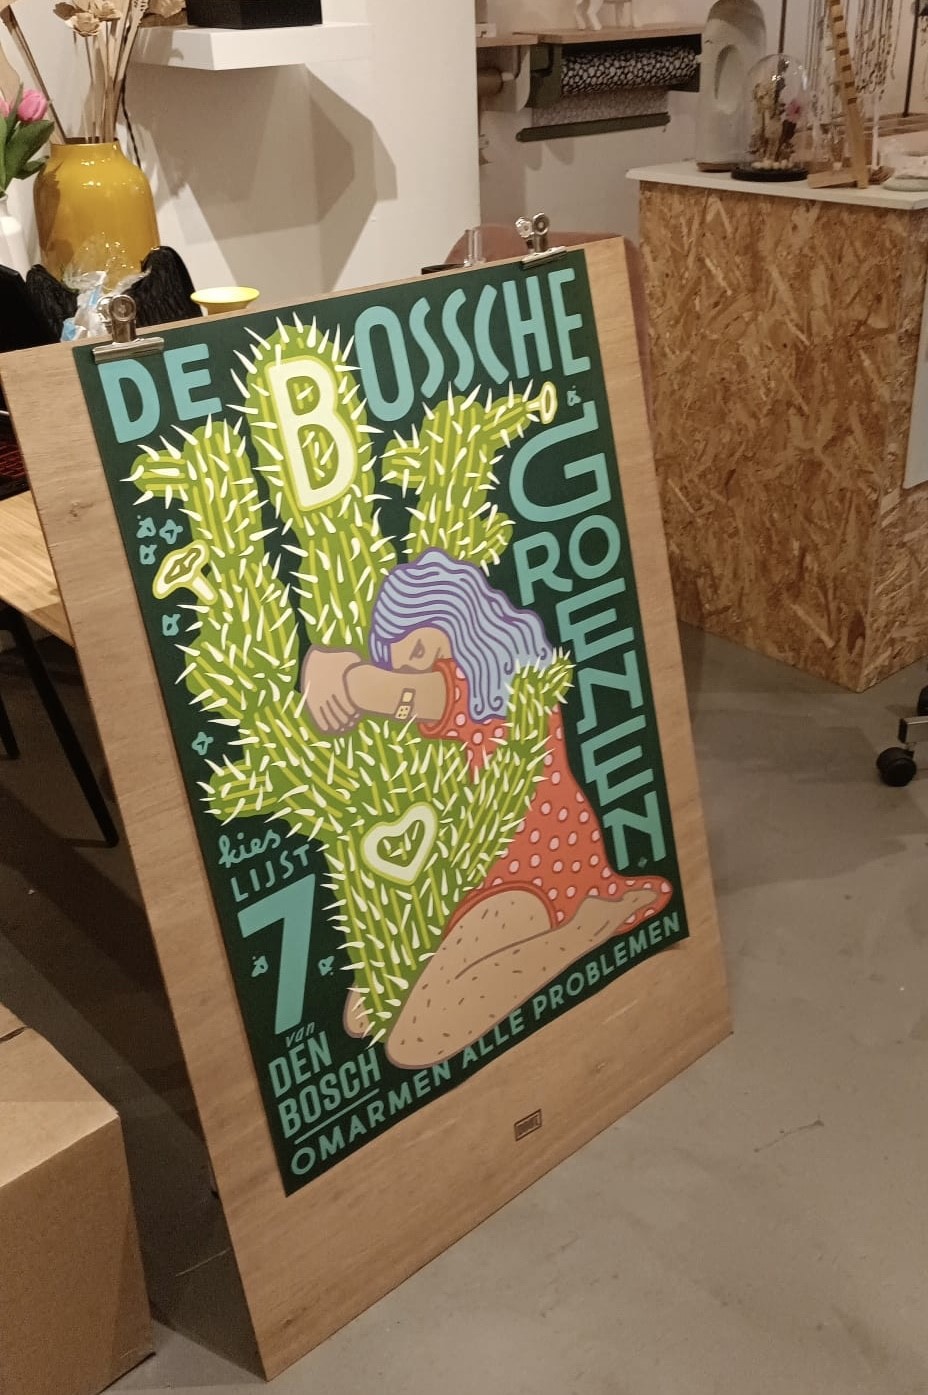 Poster De Bossche Groenen